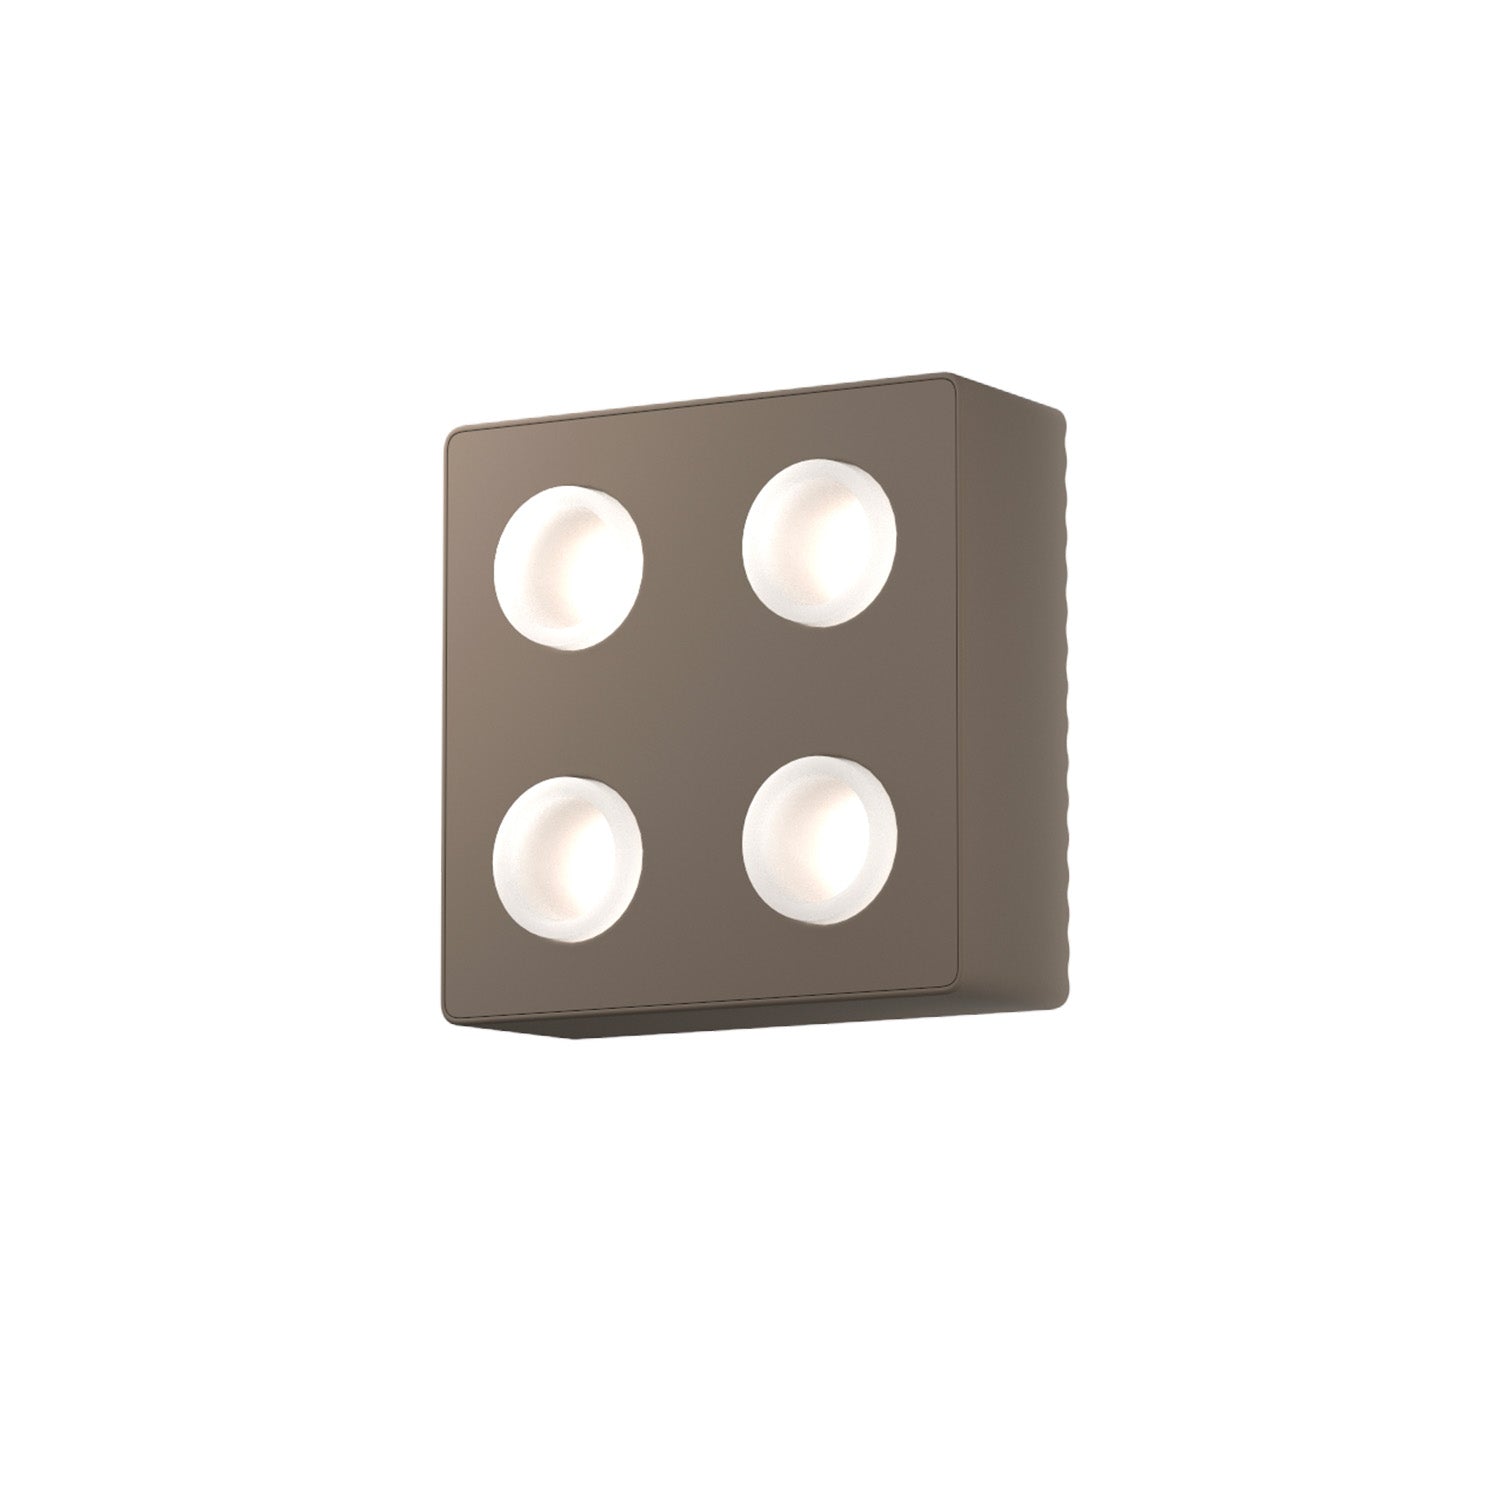 DOMINO - Applique murale en forme de lego ou domino